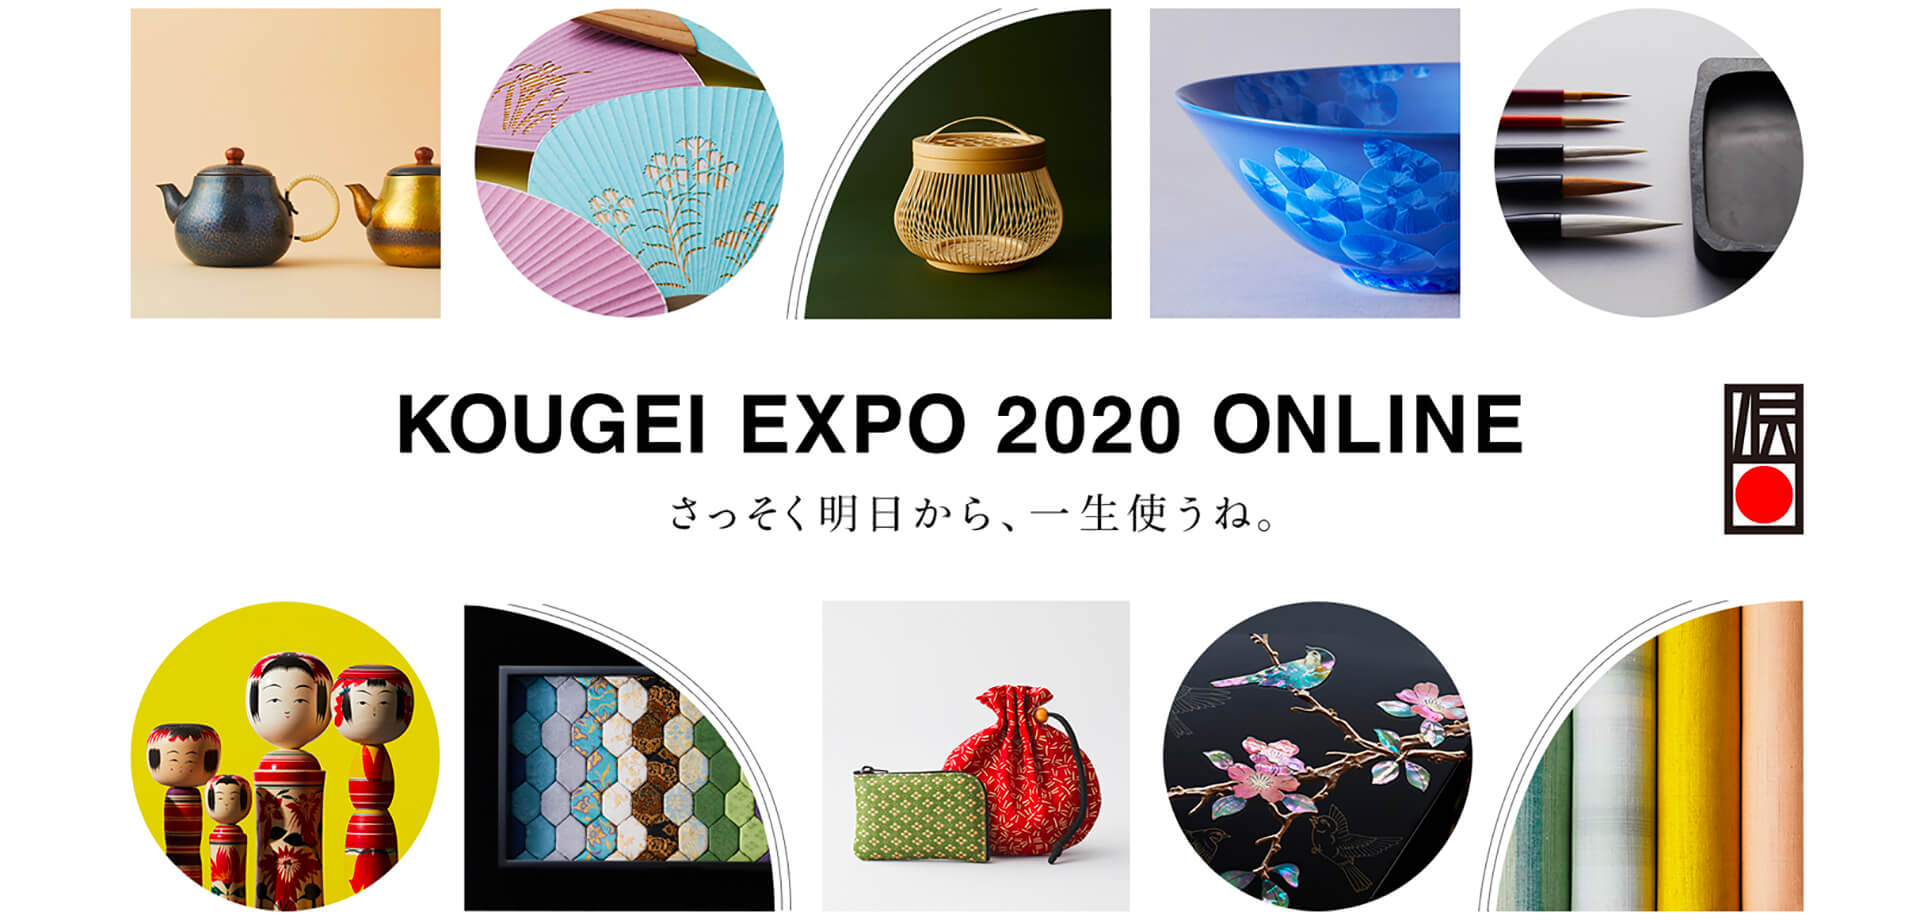 KOUGEI EXPO 2020 ONLINE